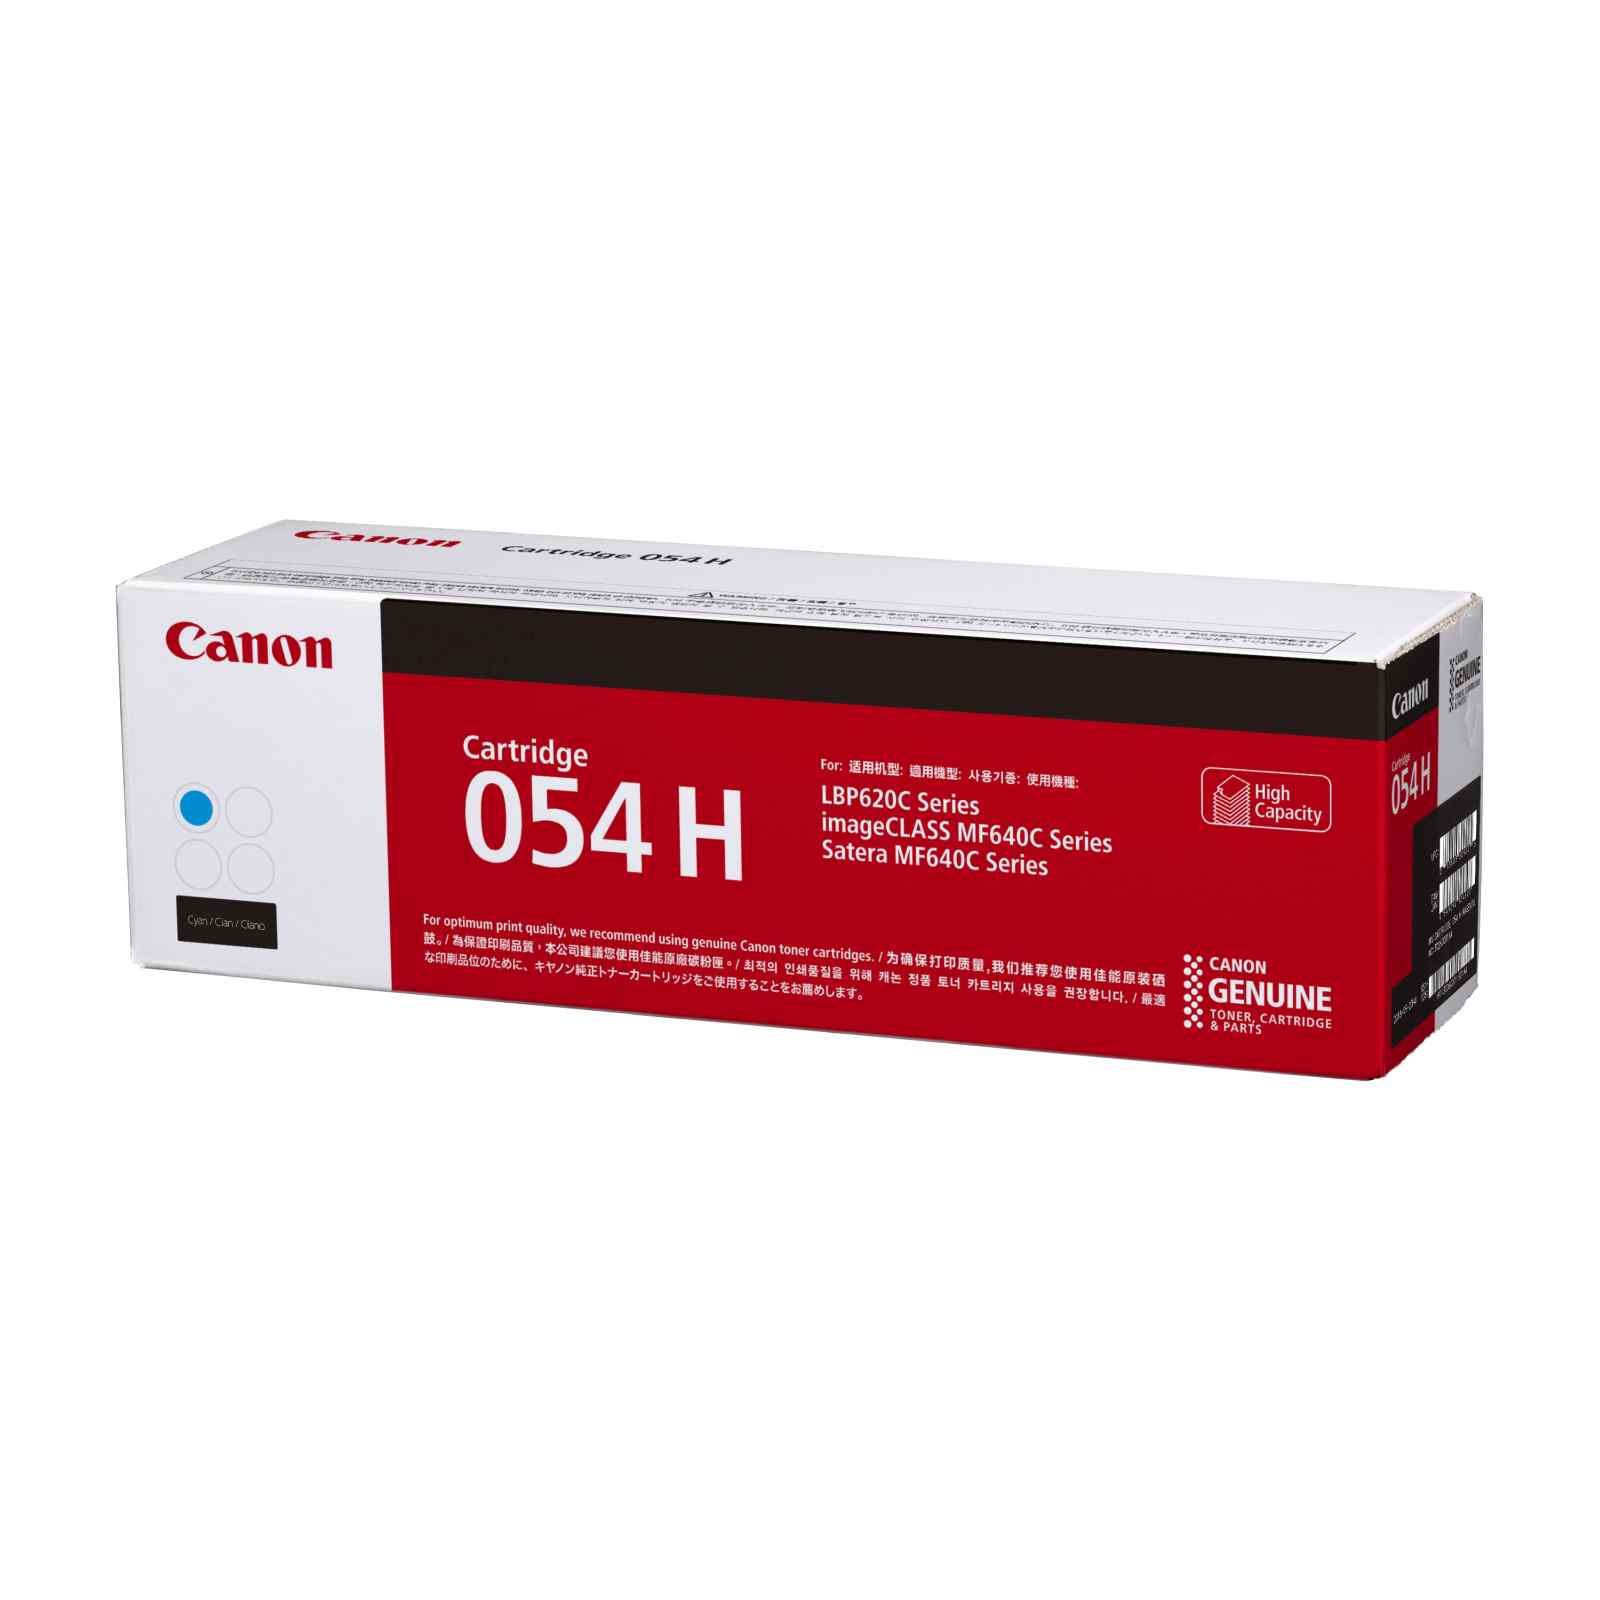 Original Canon Cart 054H High Capacity Cyan Toner